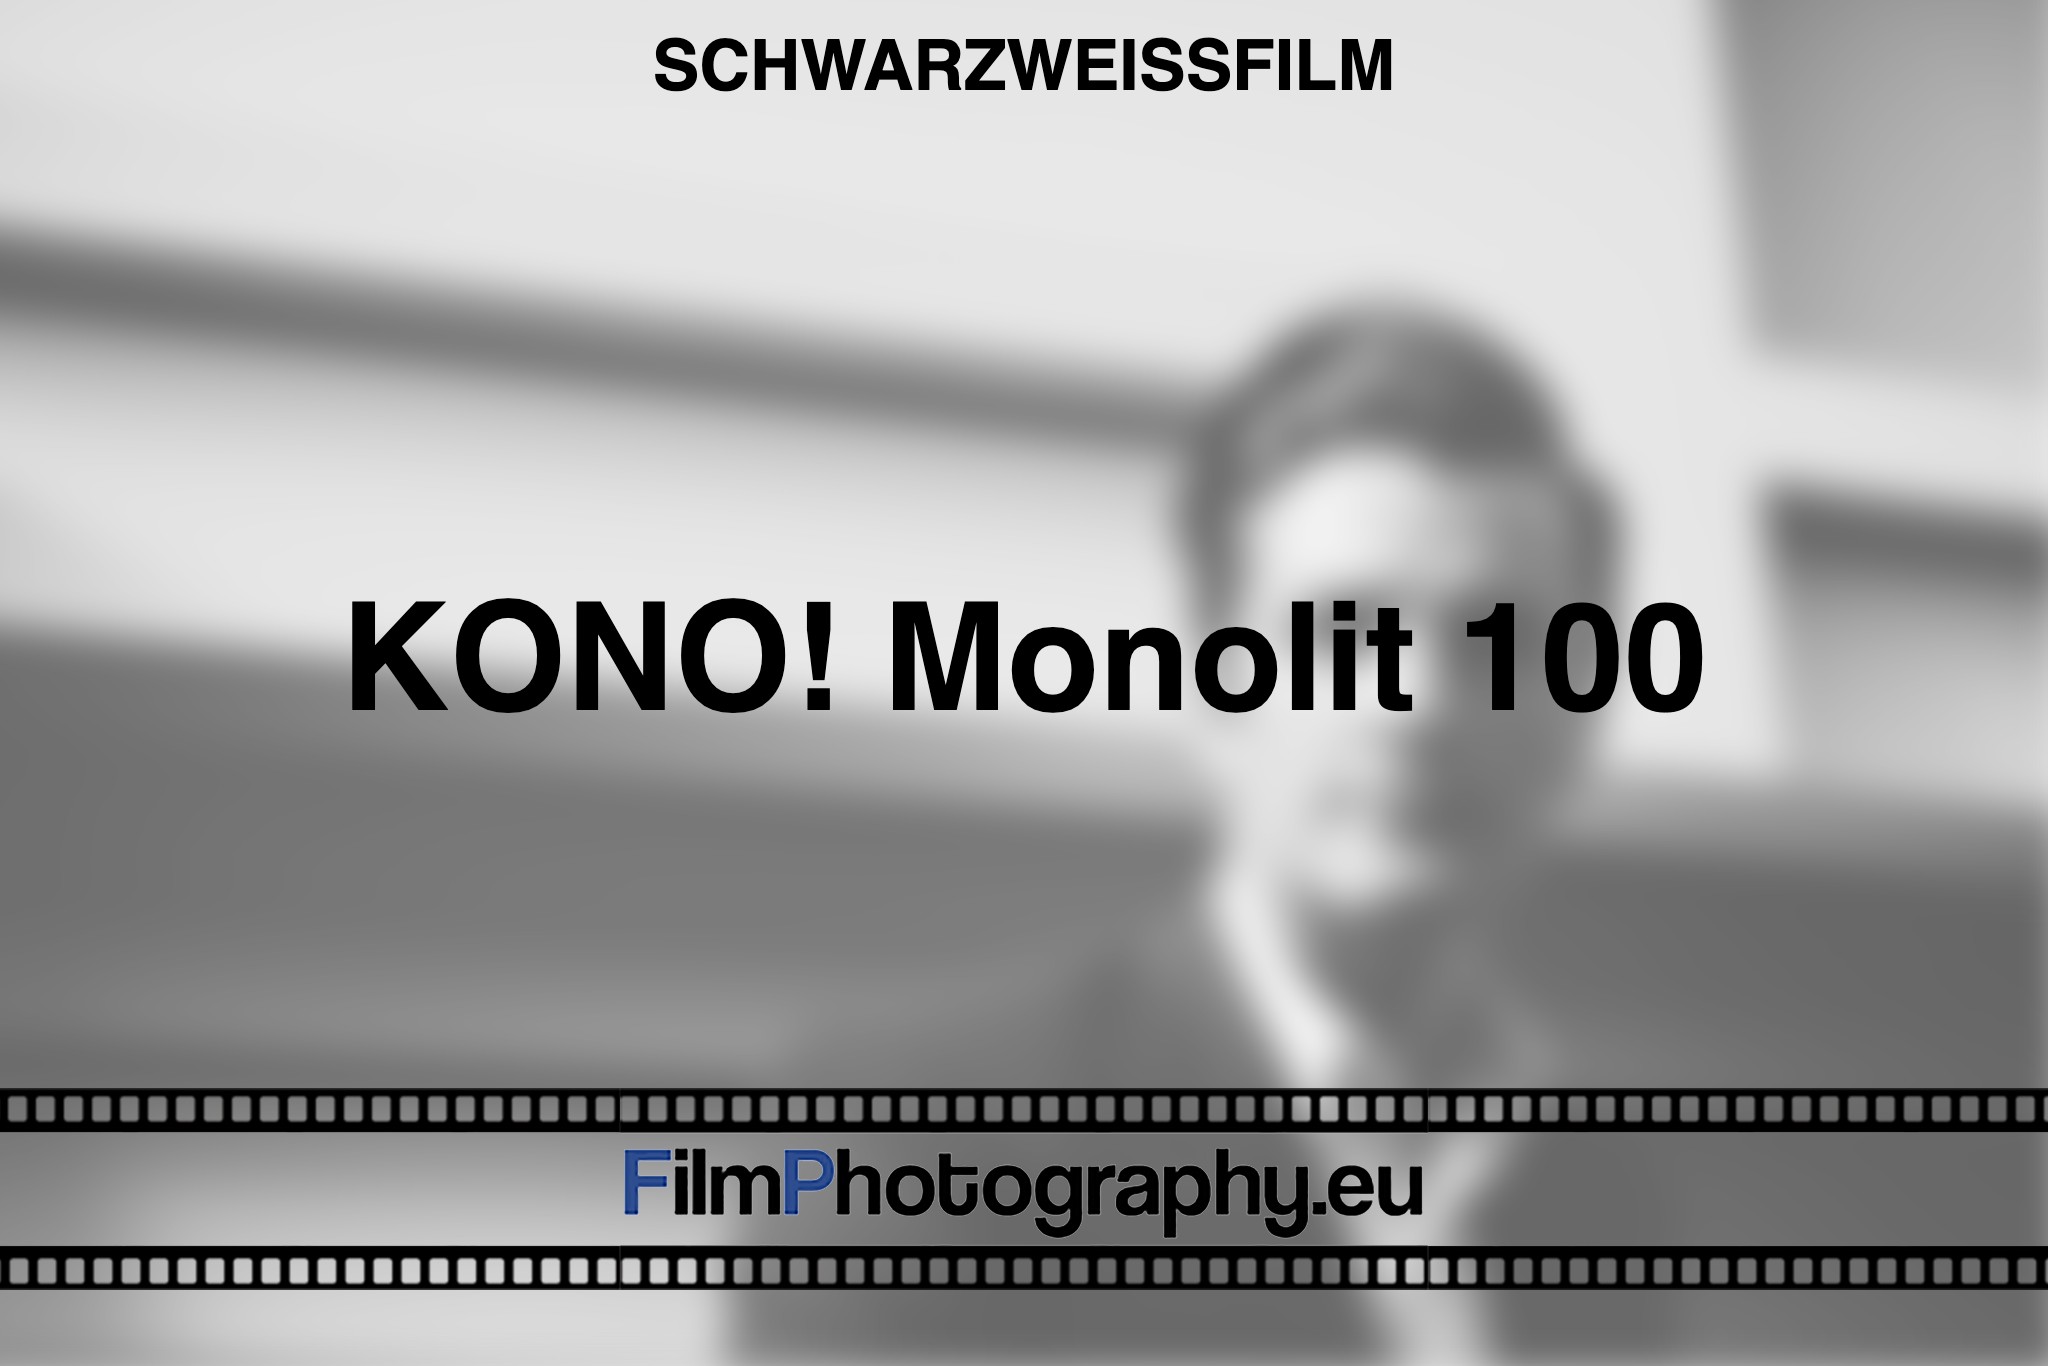 kono-monolit-100-schwarzweißfilm-bnv